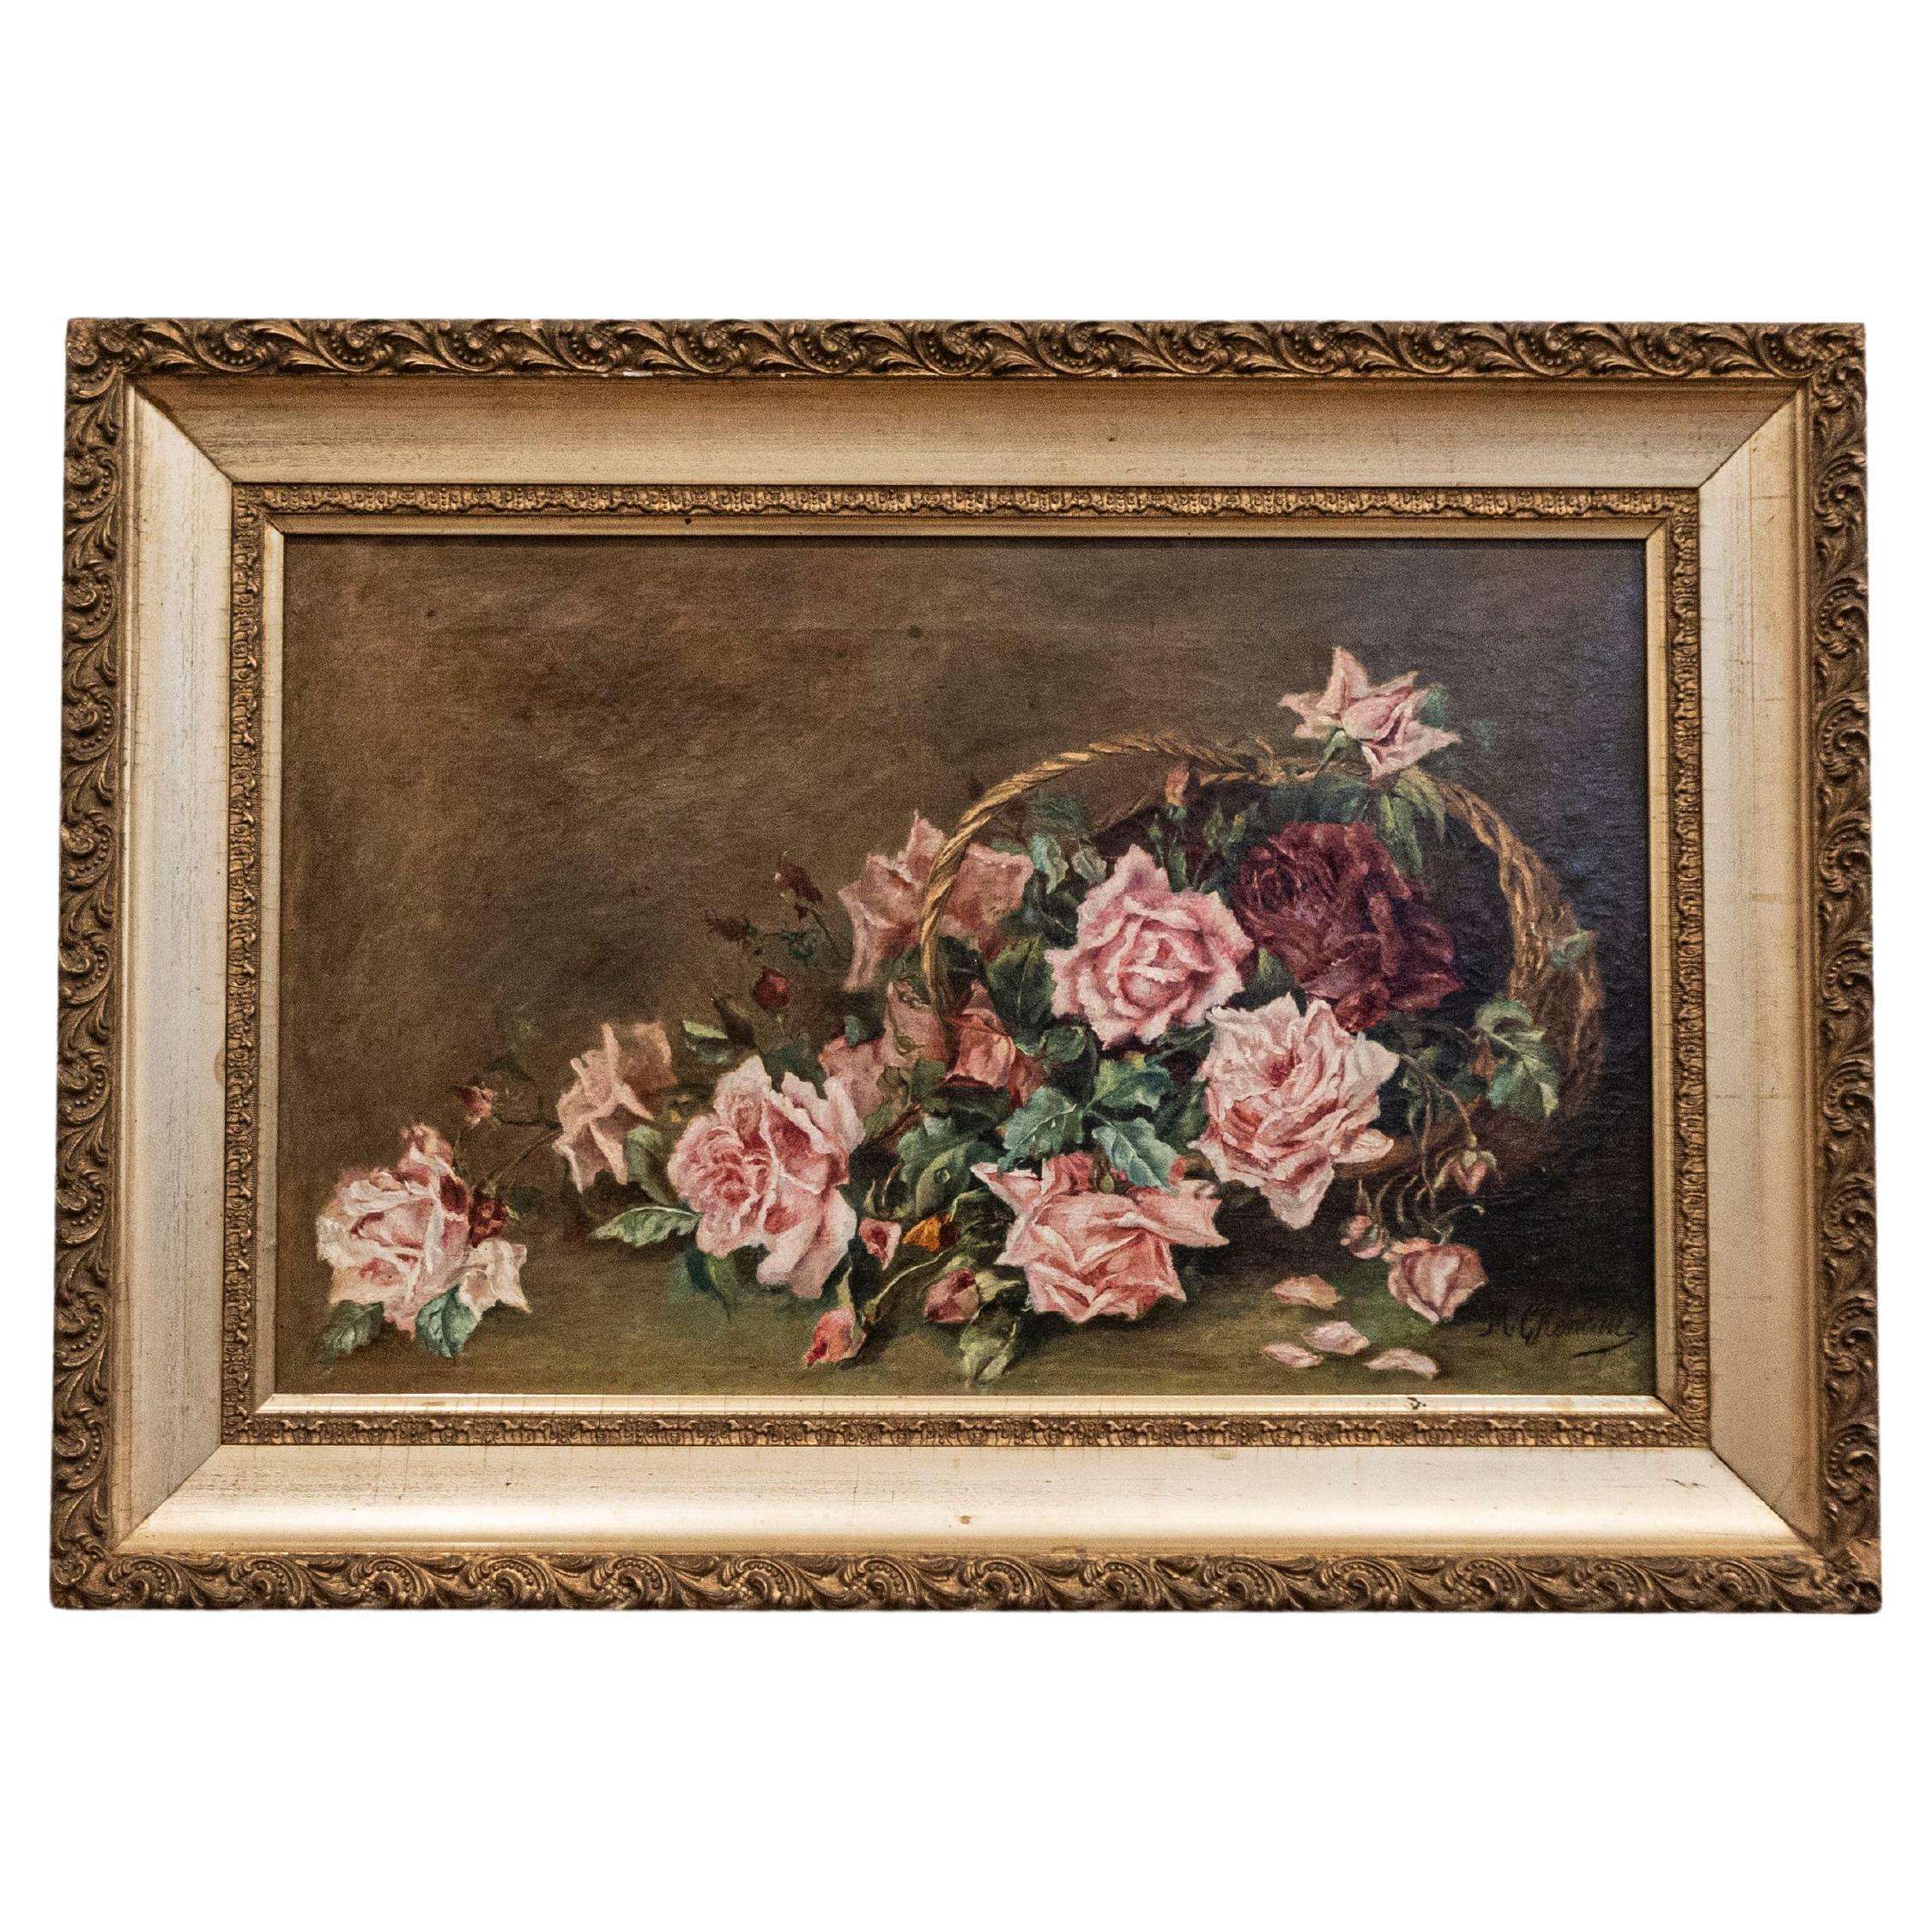 Französisch 19. Jahrhundert gerahmte florale Öl auf Leinwand Gemälde Darstellung von Rosen